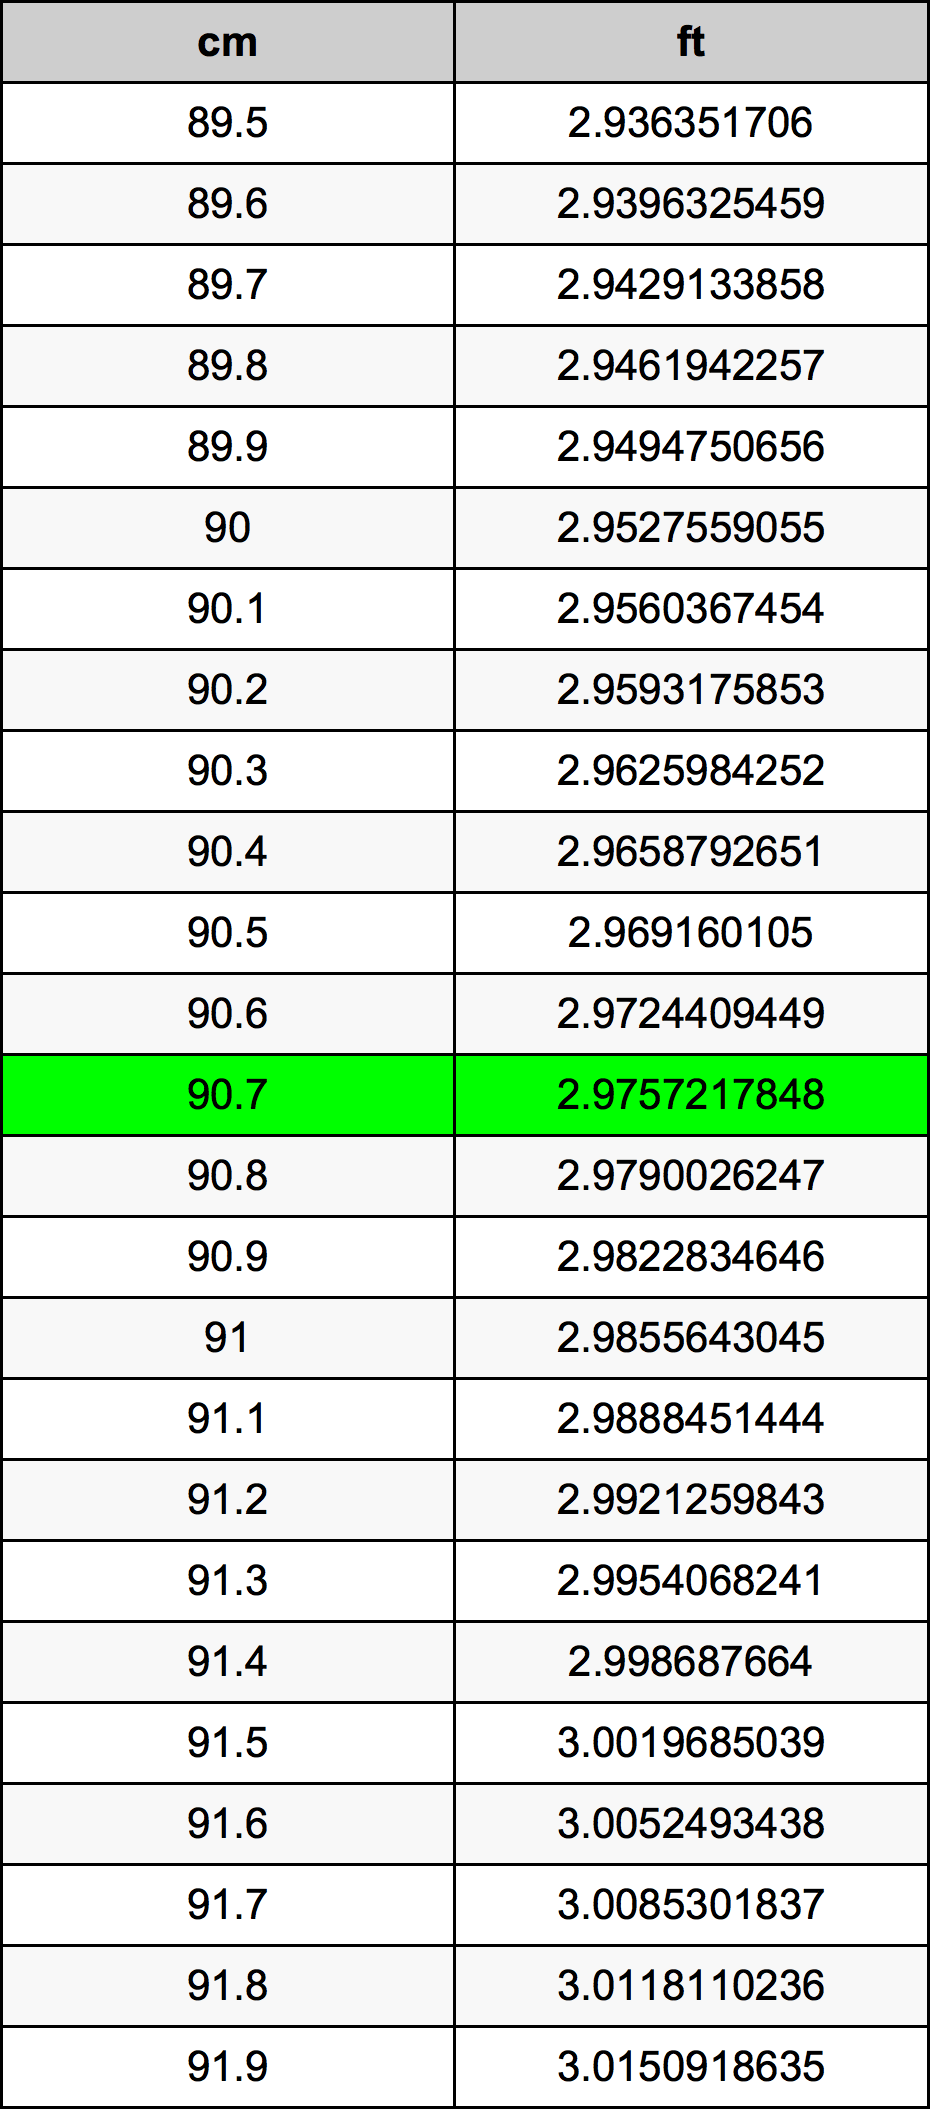 90.7 Centiméter átszámítási táblázat